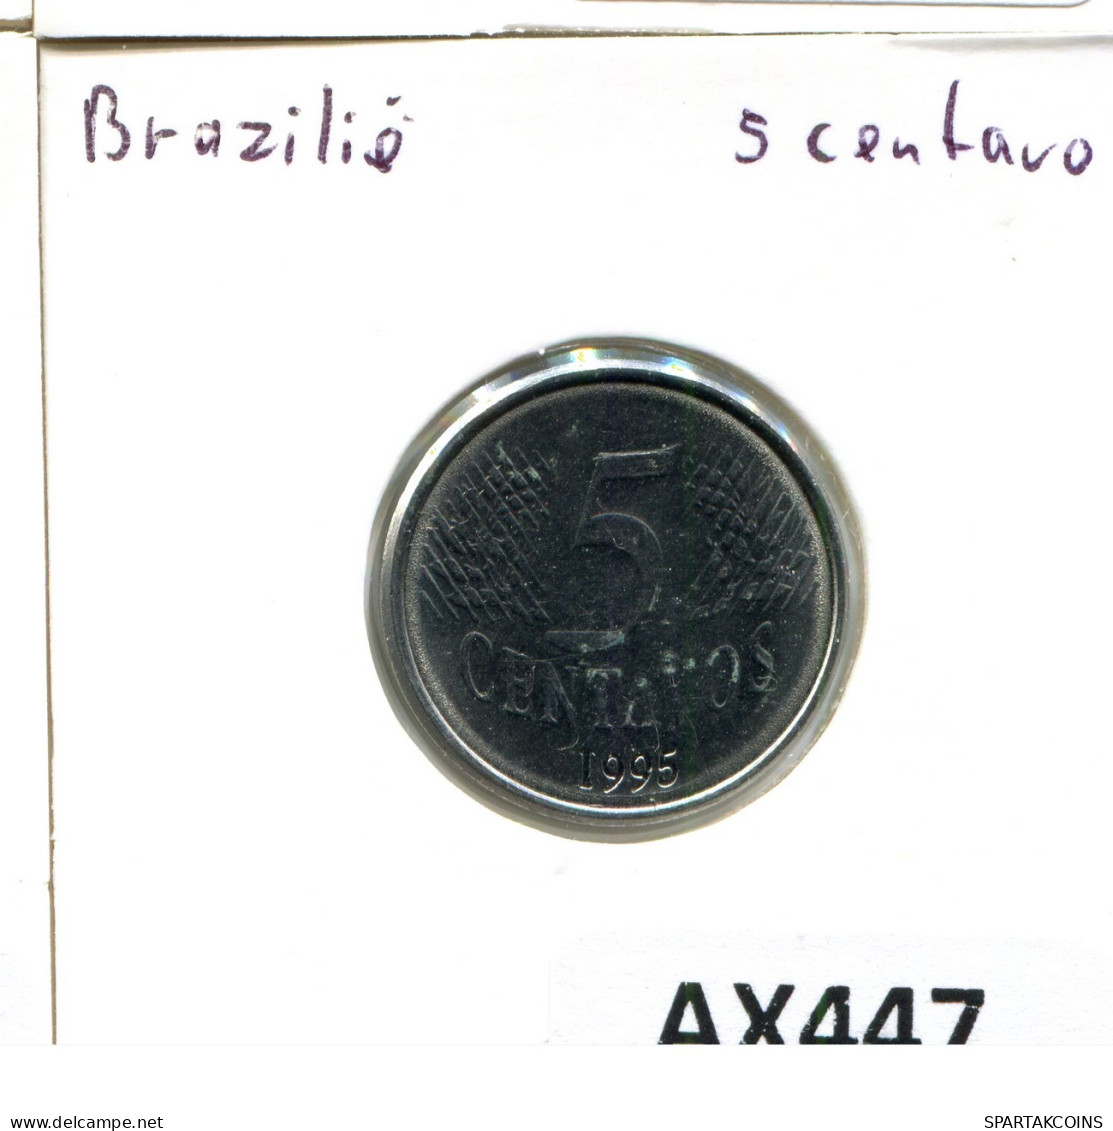 5 CENTAVOS 1995 BBASILIEN BRAZIL Münze #AX447.D.A - Brazil